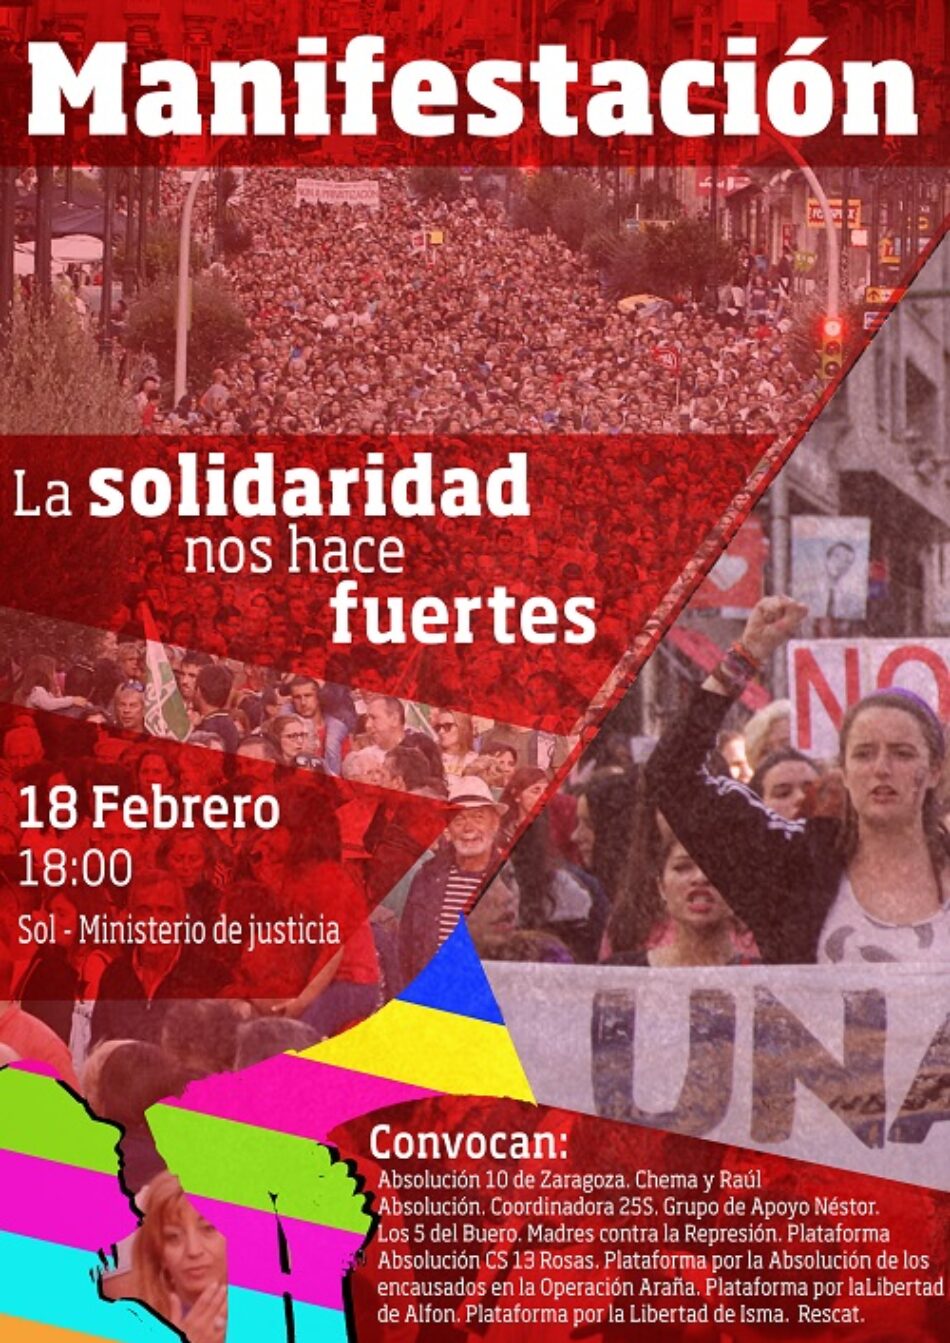 CGT participará en la manifestación del 18 de febrero contra la represión